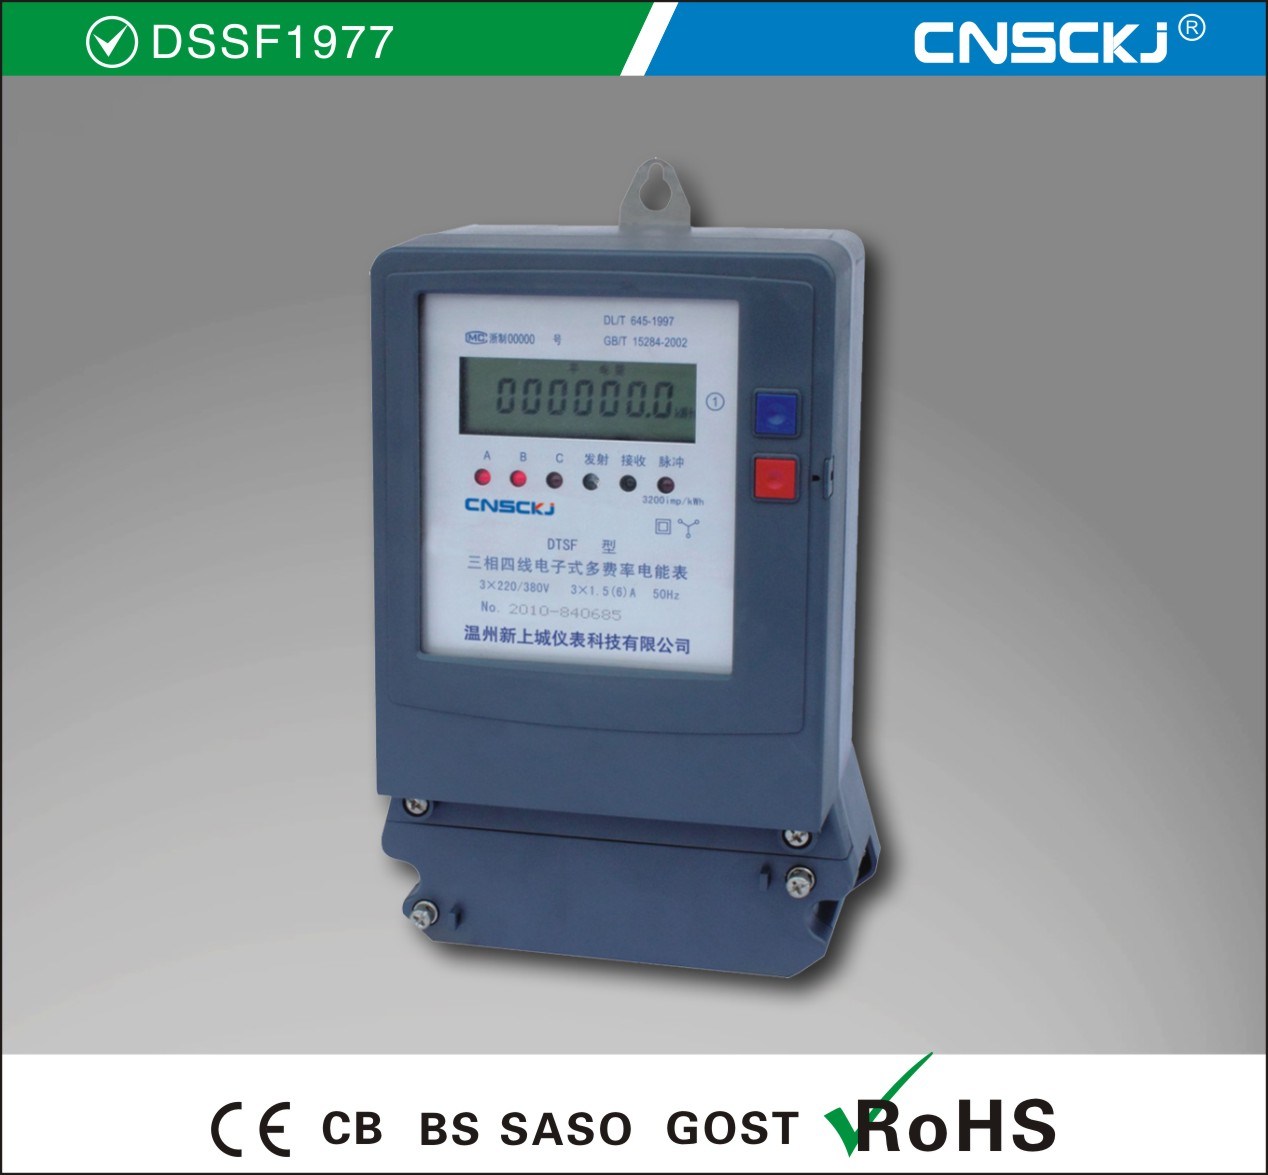 Three Phase Multi-Rate Watt Hour Meter (DTSF/DSSF1977)